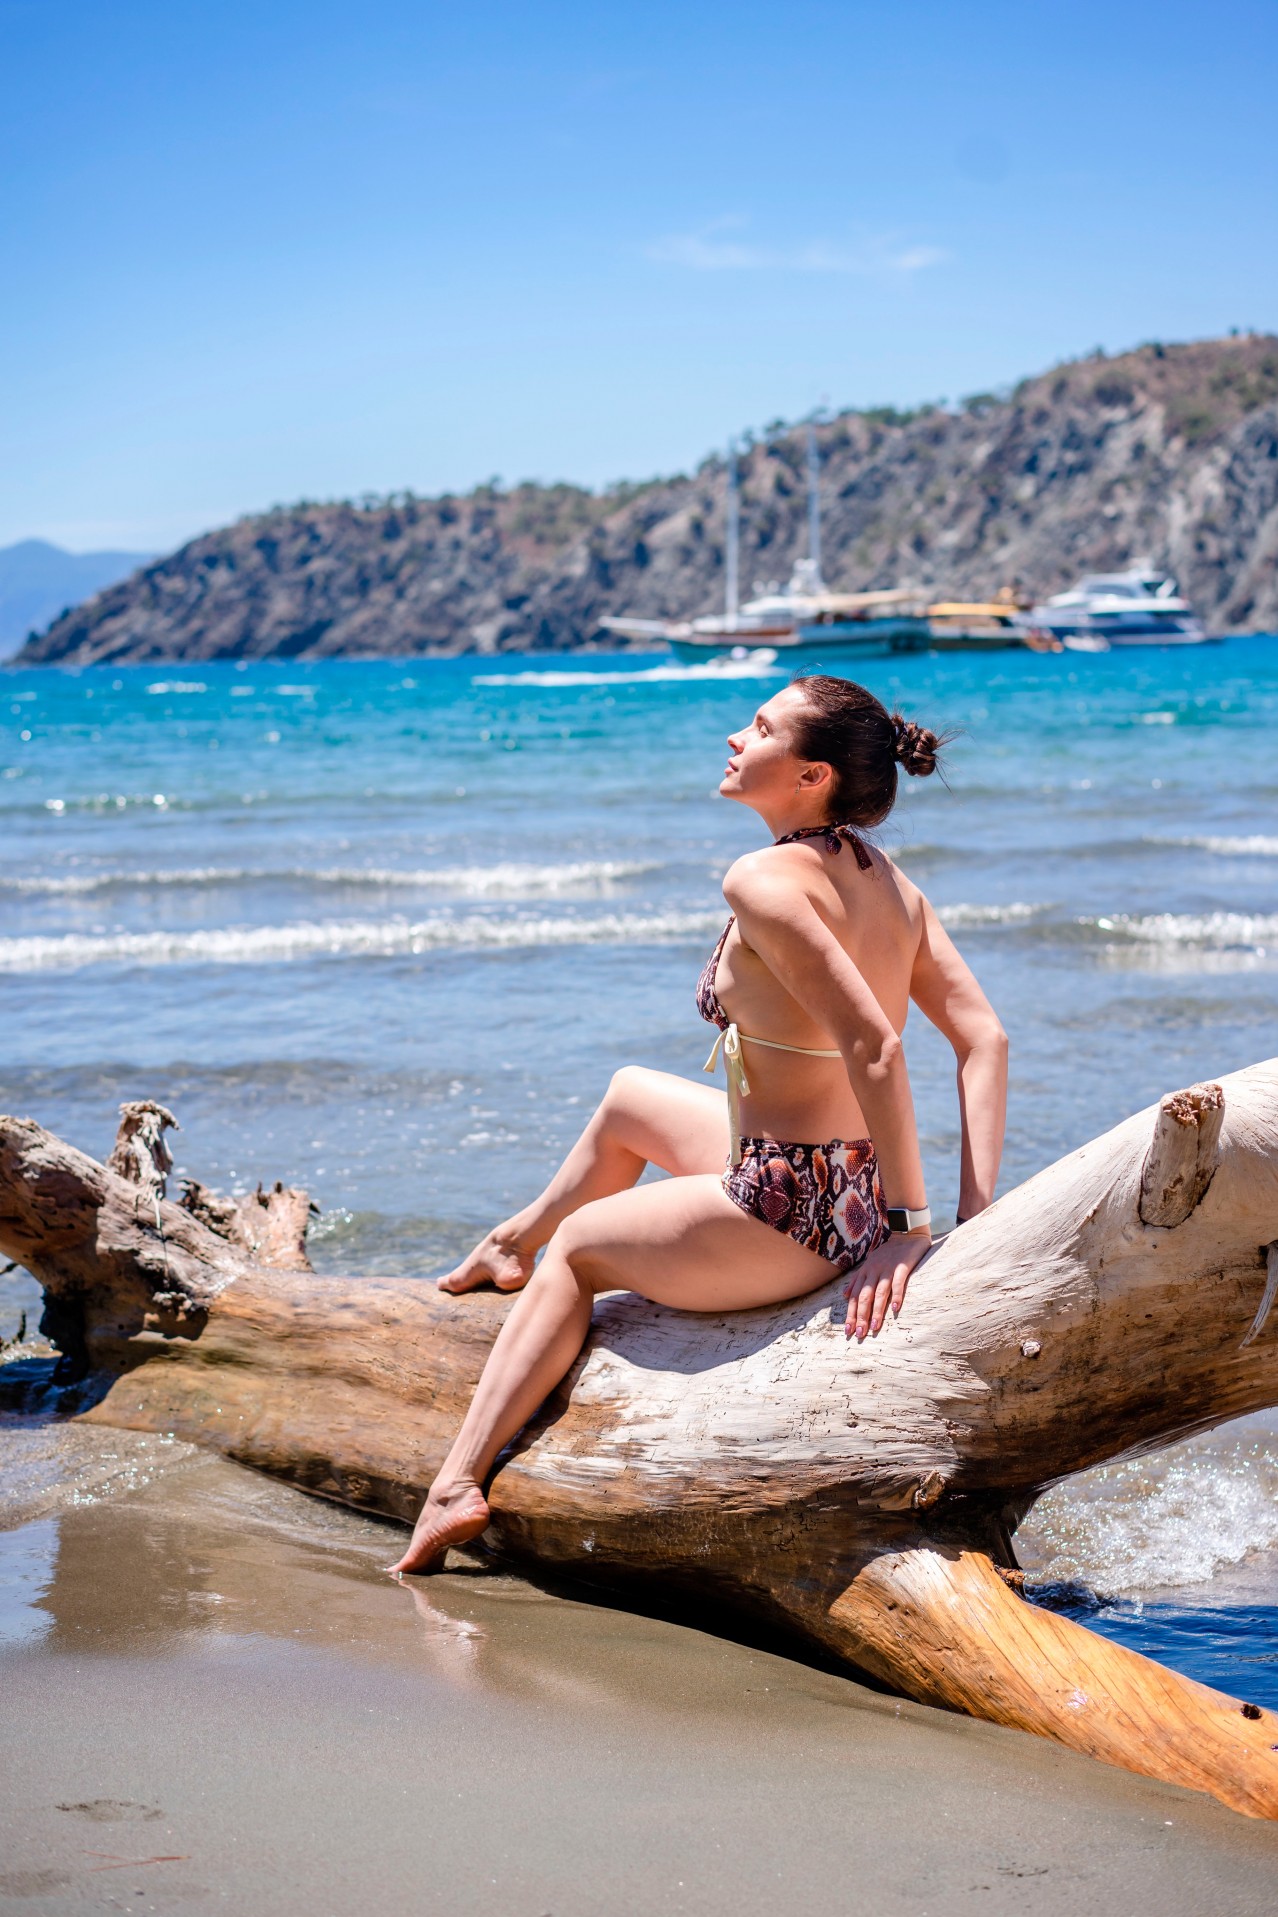 Woman in bikini sitting on the log at the beach